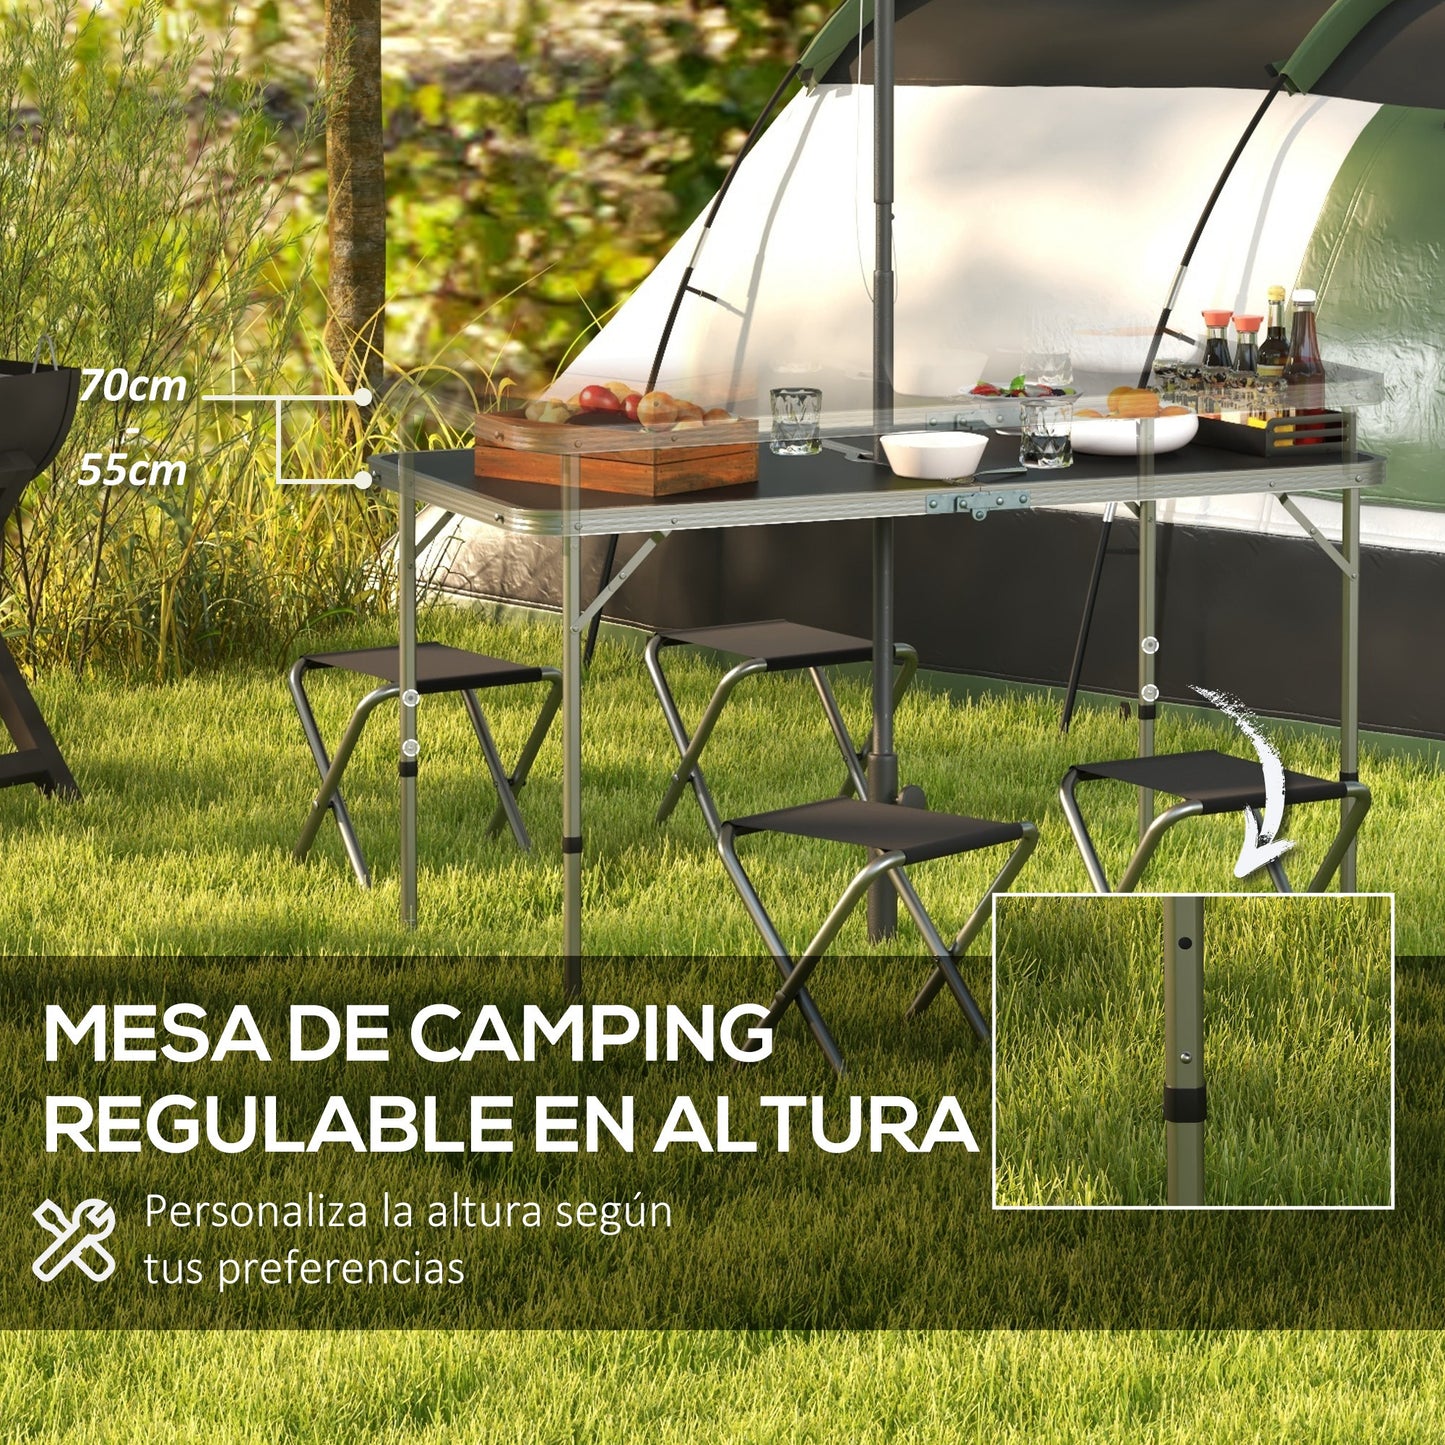 Outsunny Conjunto de Camping de 5 Piezas Mesa para Camping Plegable con Sillas Incluye 1 Mesa Ajuatsble en Altura con Orificio para Sombrilla 120x60x55-70 cm y 4 Taburetes Plegables Negro